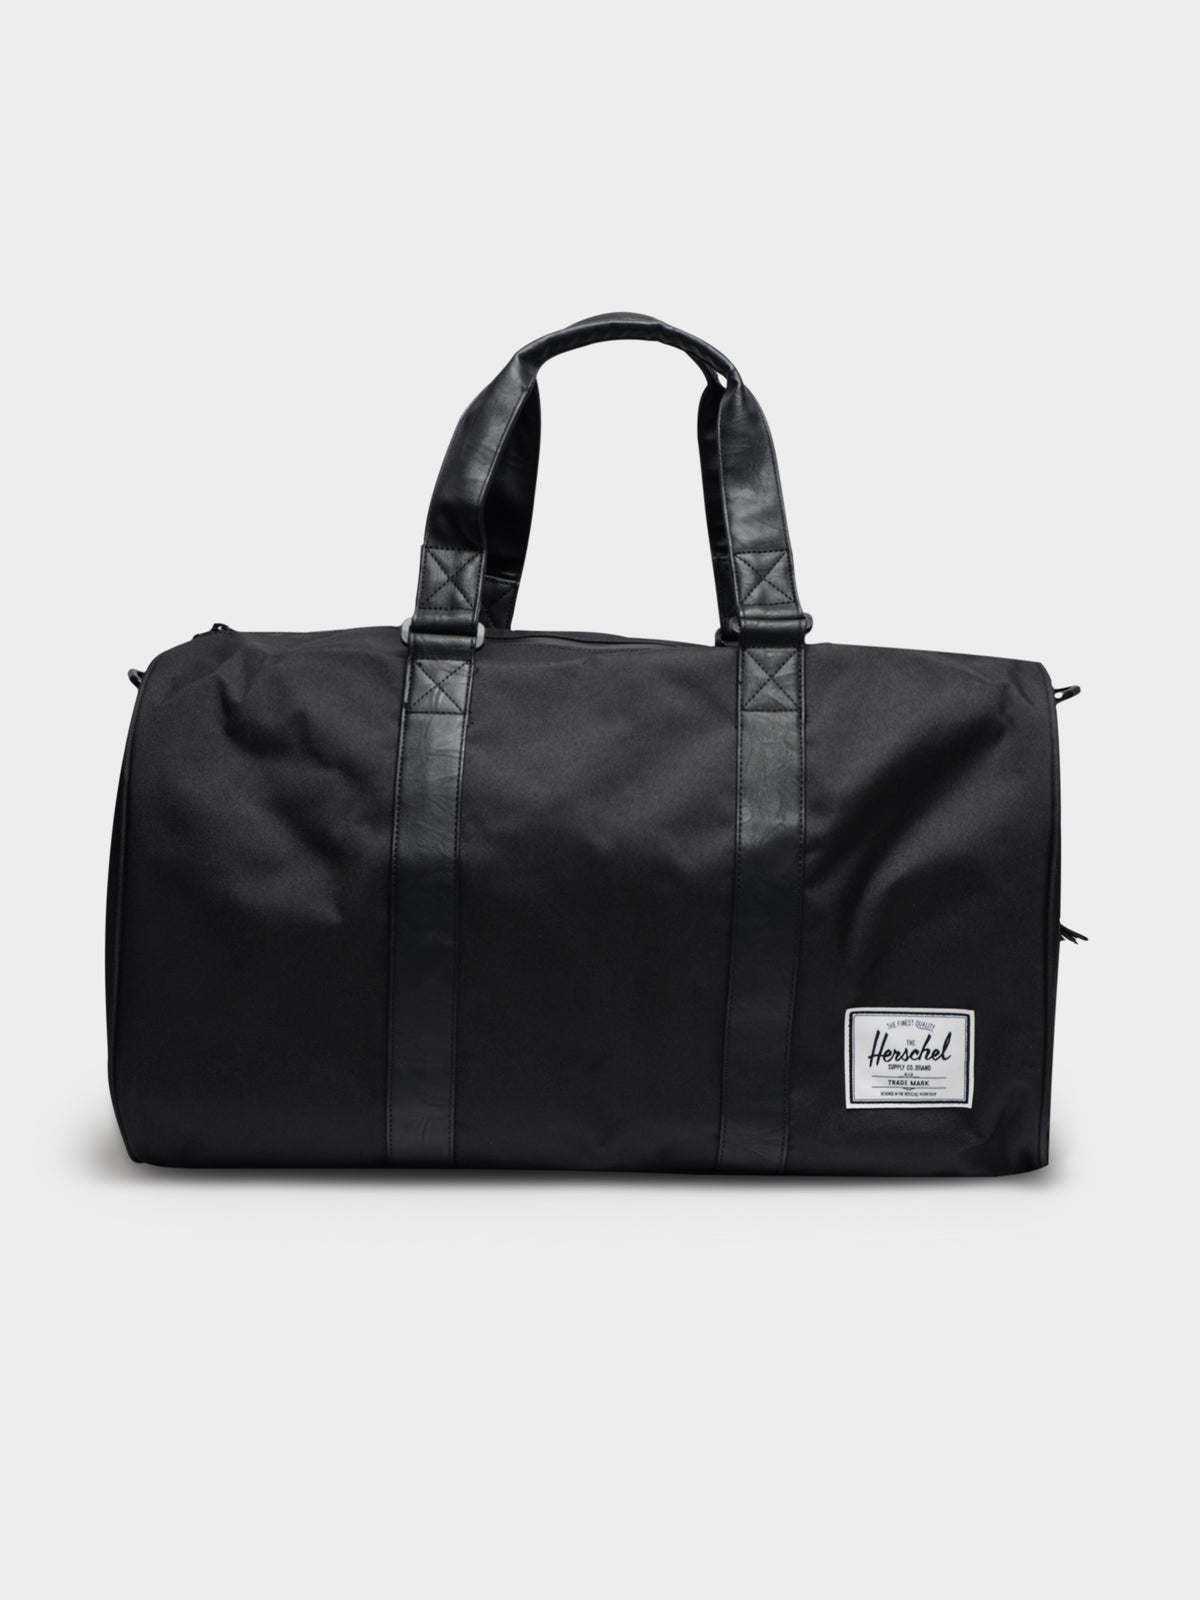 Novel Duffle Bag in Black